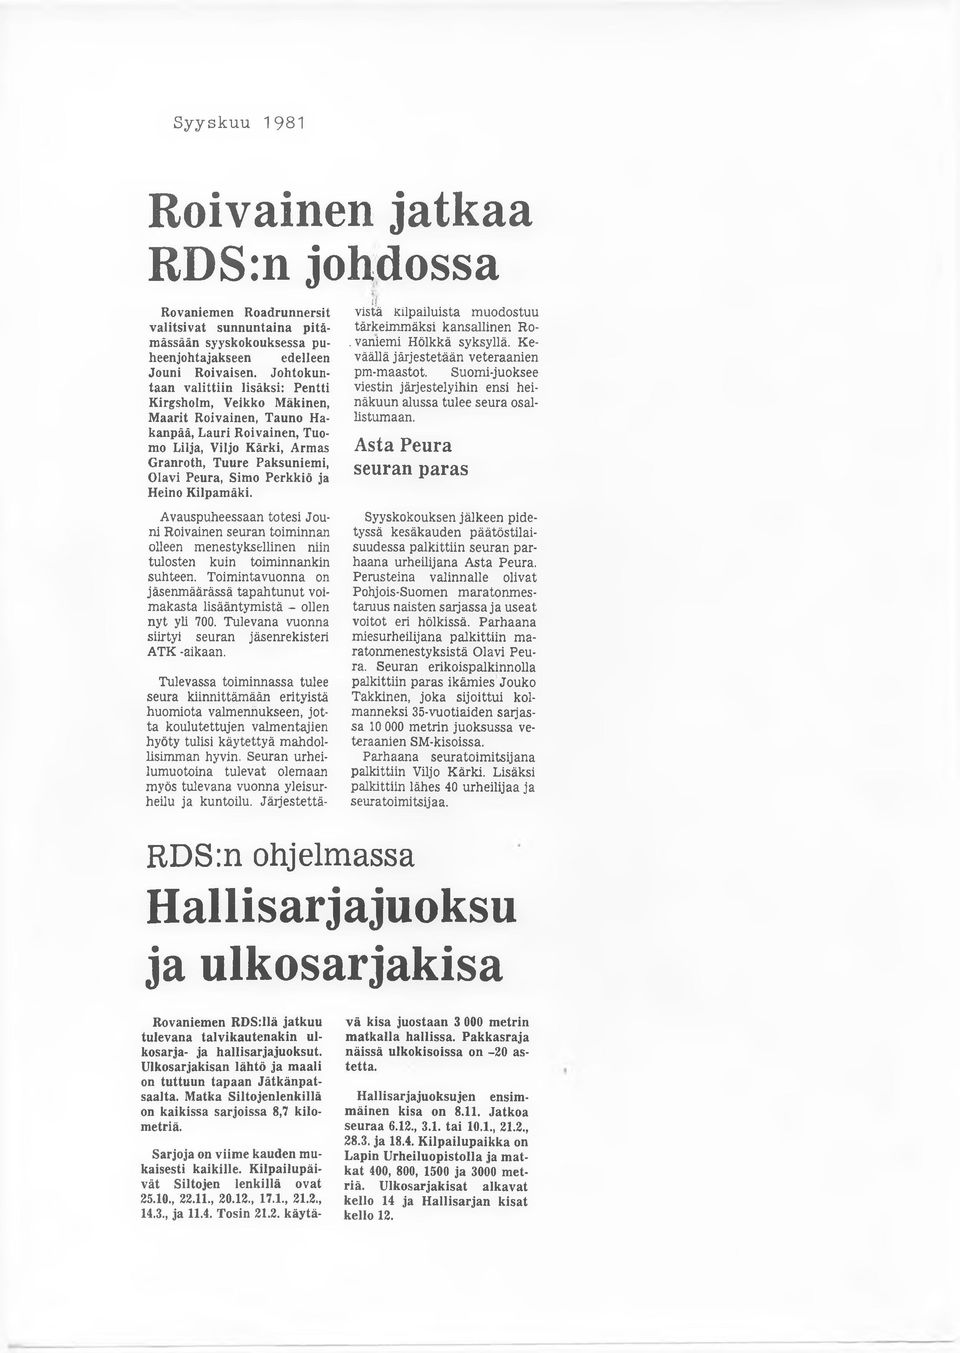 Perkkiö ja Heino Kilpamäki. Avauspuheessaan totesi Jouni Roivainen seuran toiminnan olleen menestyksellinen niin tulosten kuin toiminnankin suhteen.